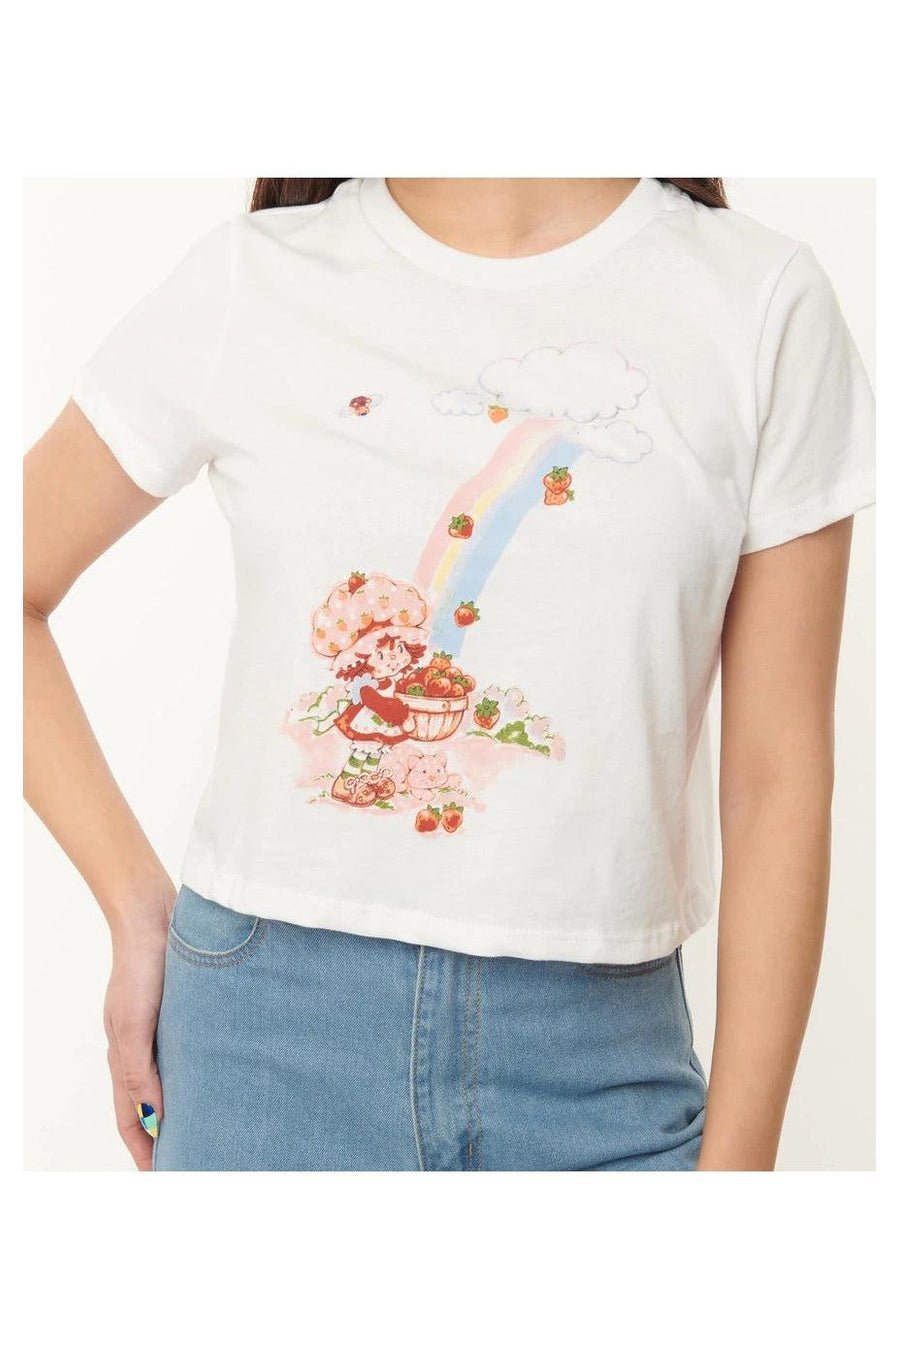 Shop Strawberry Shortcake x Unique Vintage Rainbow Graphic Crop Tee - Premium T-Shirt from Unique Vintage Online now at Spoiled Brat 